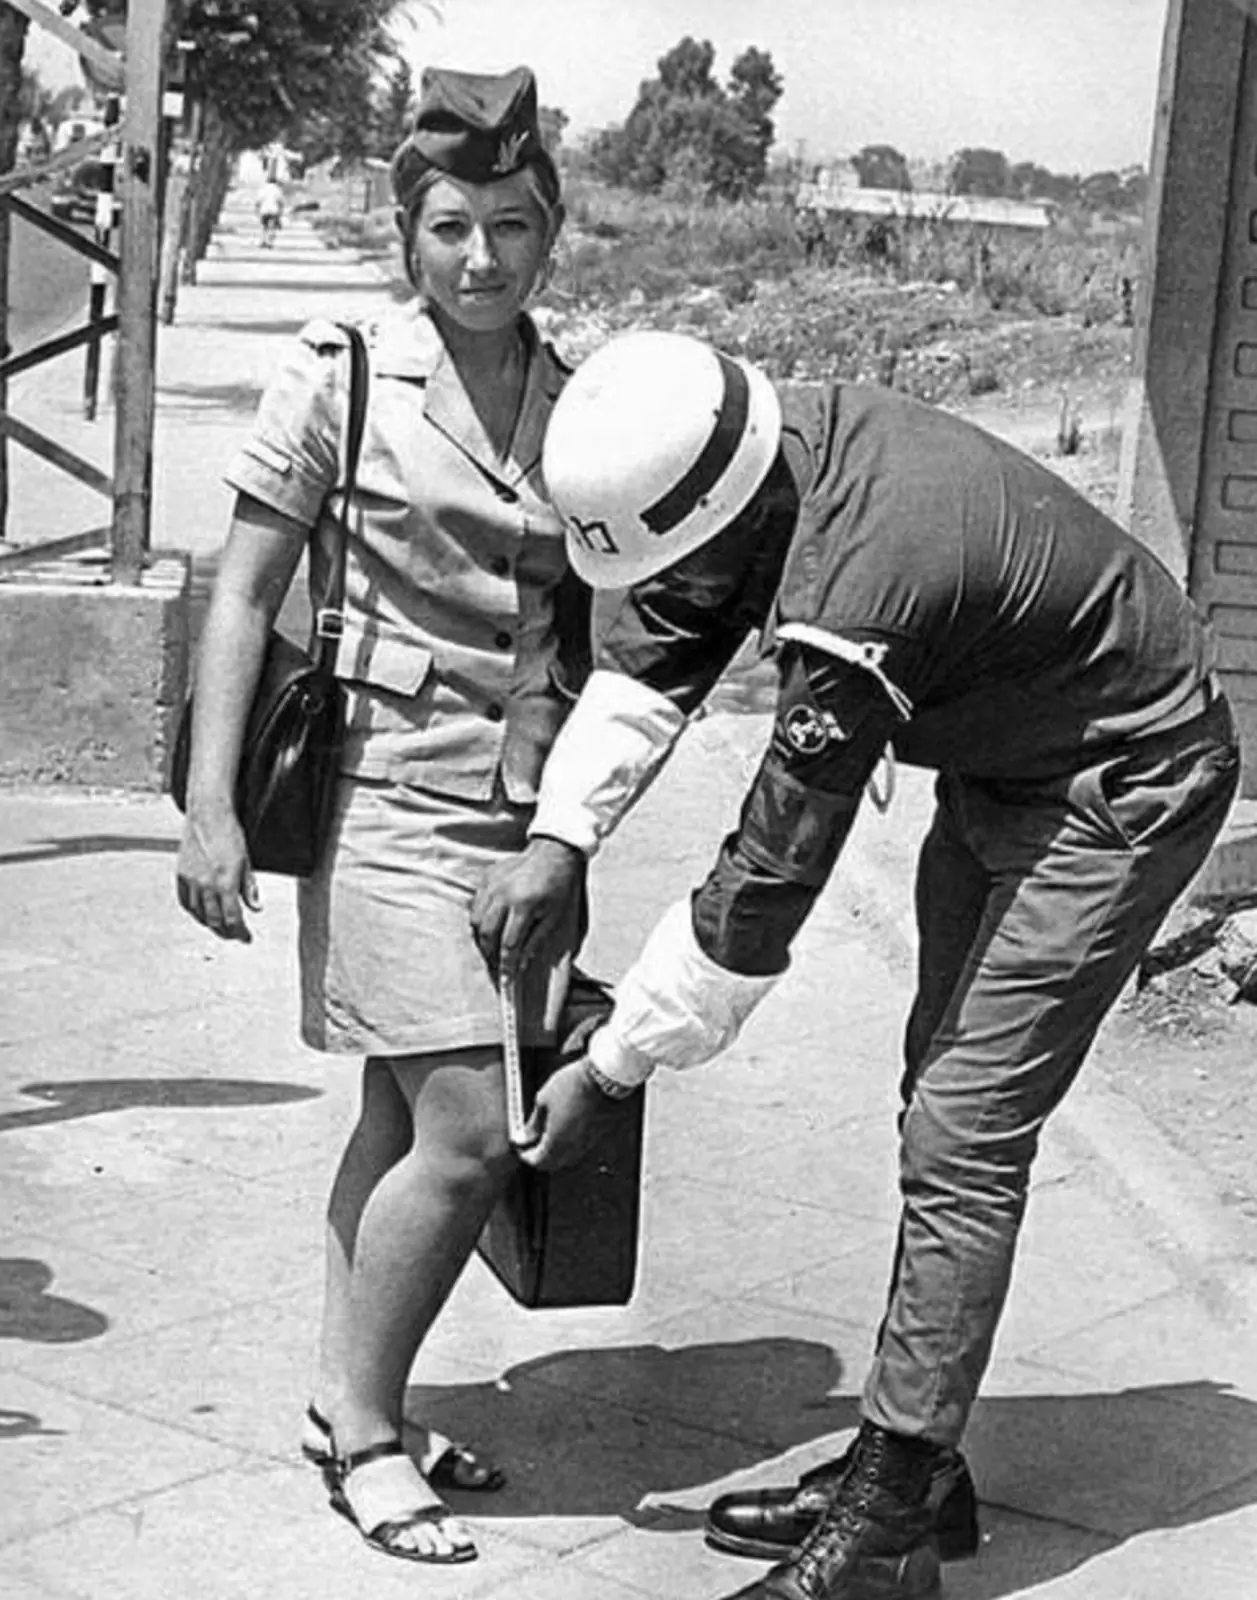  Военная полиция проверяет длину юбки у военнослужащей. Израиль, 1969 год.